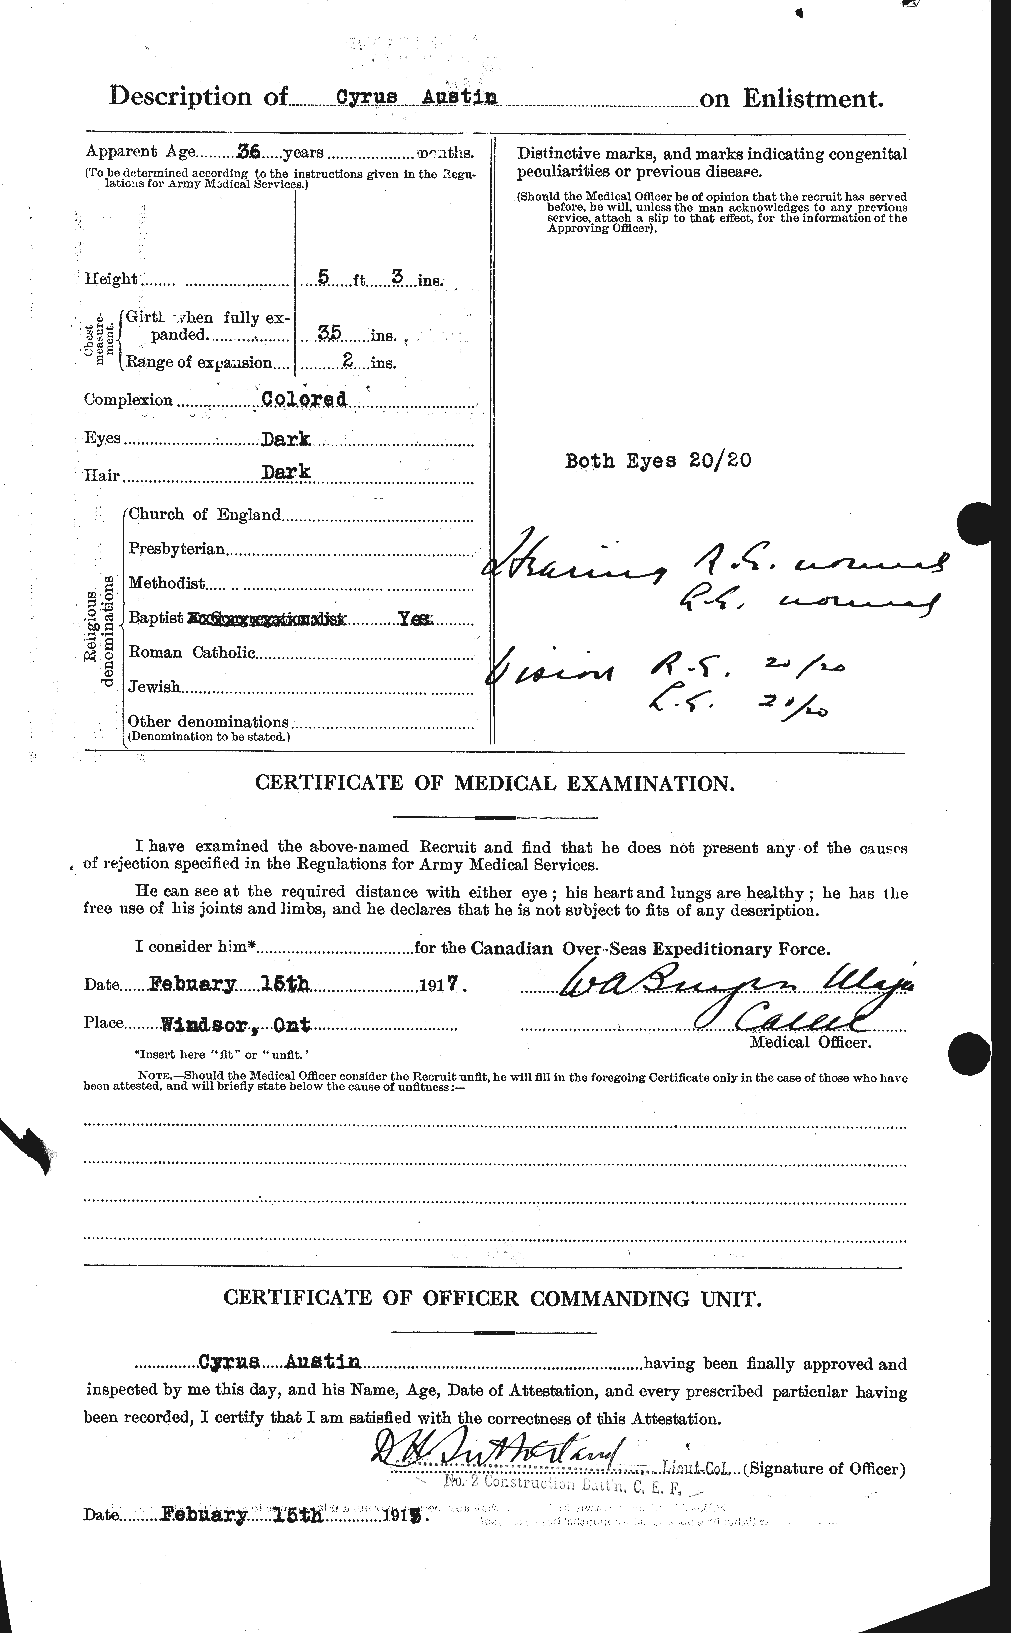 Dossiers du Personnel de la Première Guerre mondiale - CEC 215437b